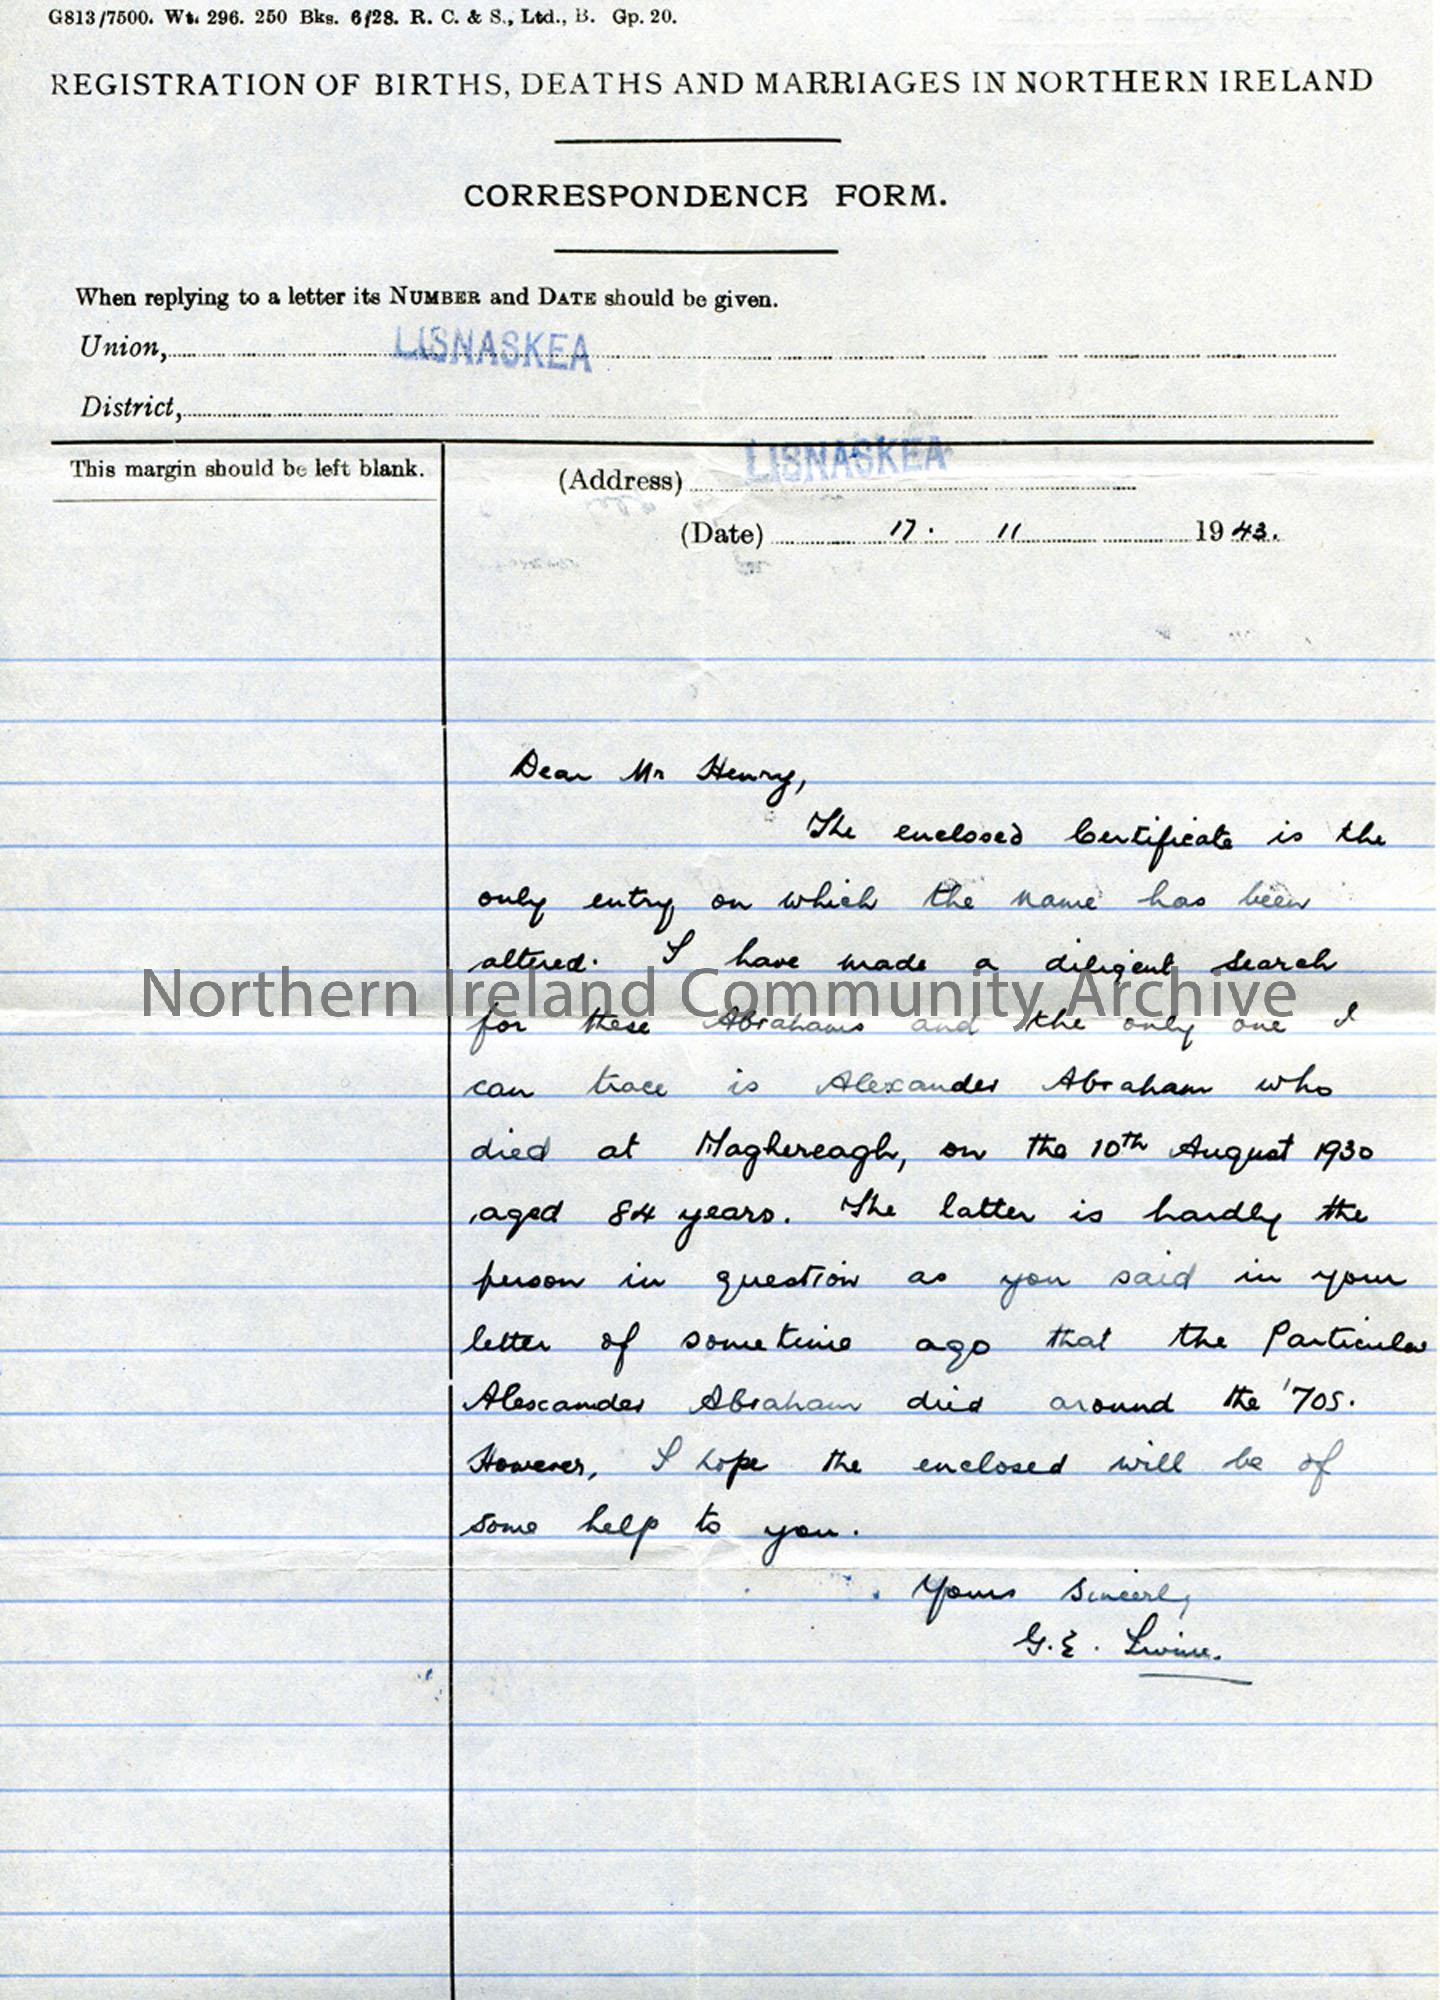 Letter from Miss G E Irvine 17.11.1943